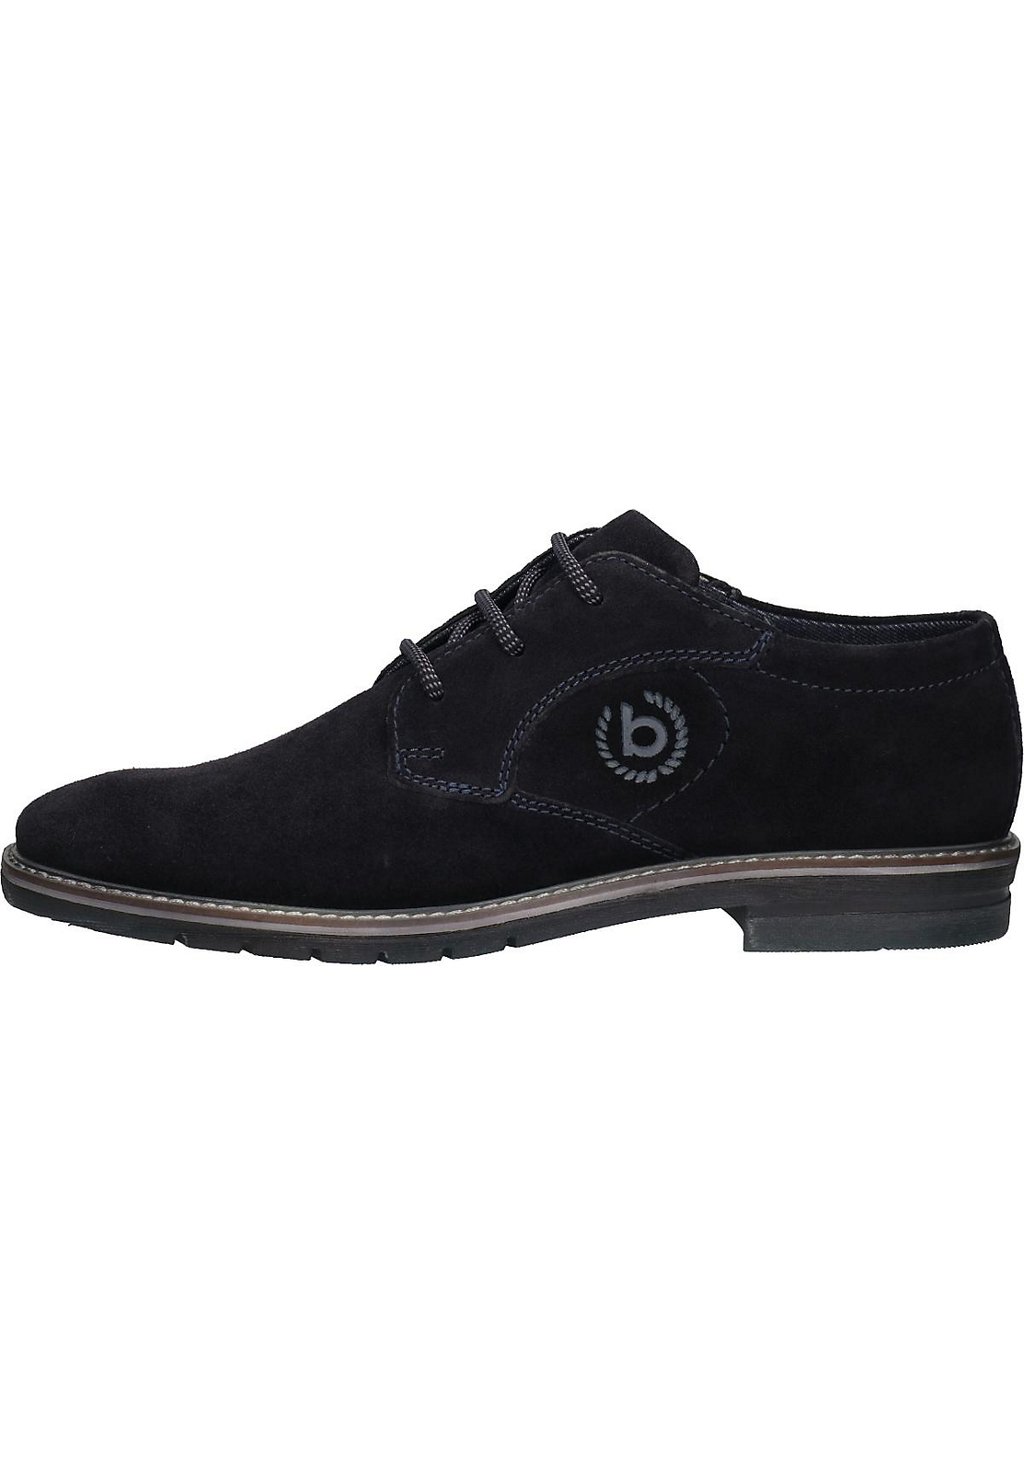 Спортивные туфли на шнуровке BUSINESS bugatti, цвет dunkelblau